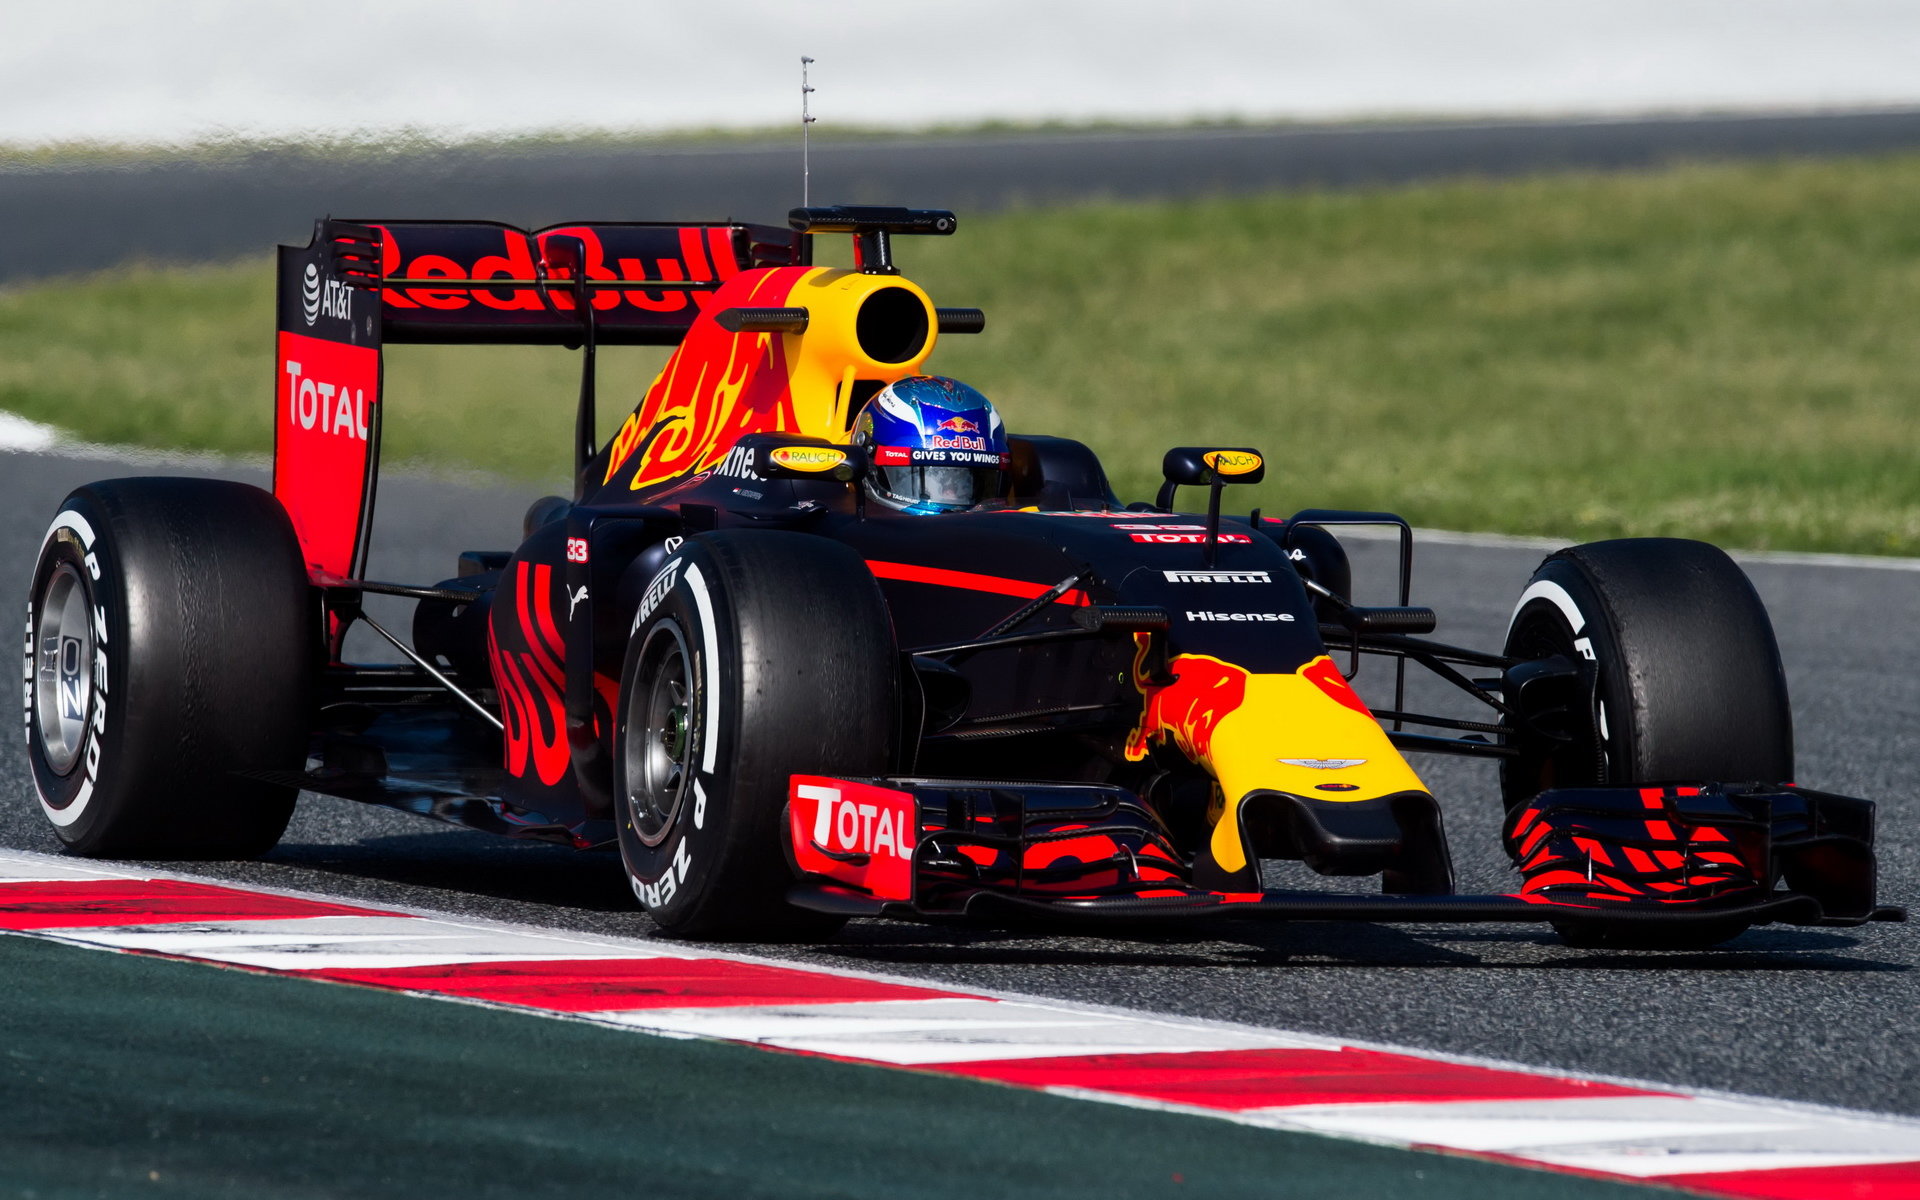 Rýsuje se u Red Bull ještě jiný dodavatel než Renault?